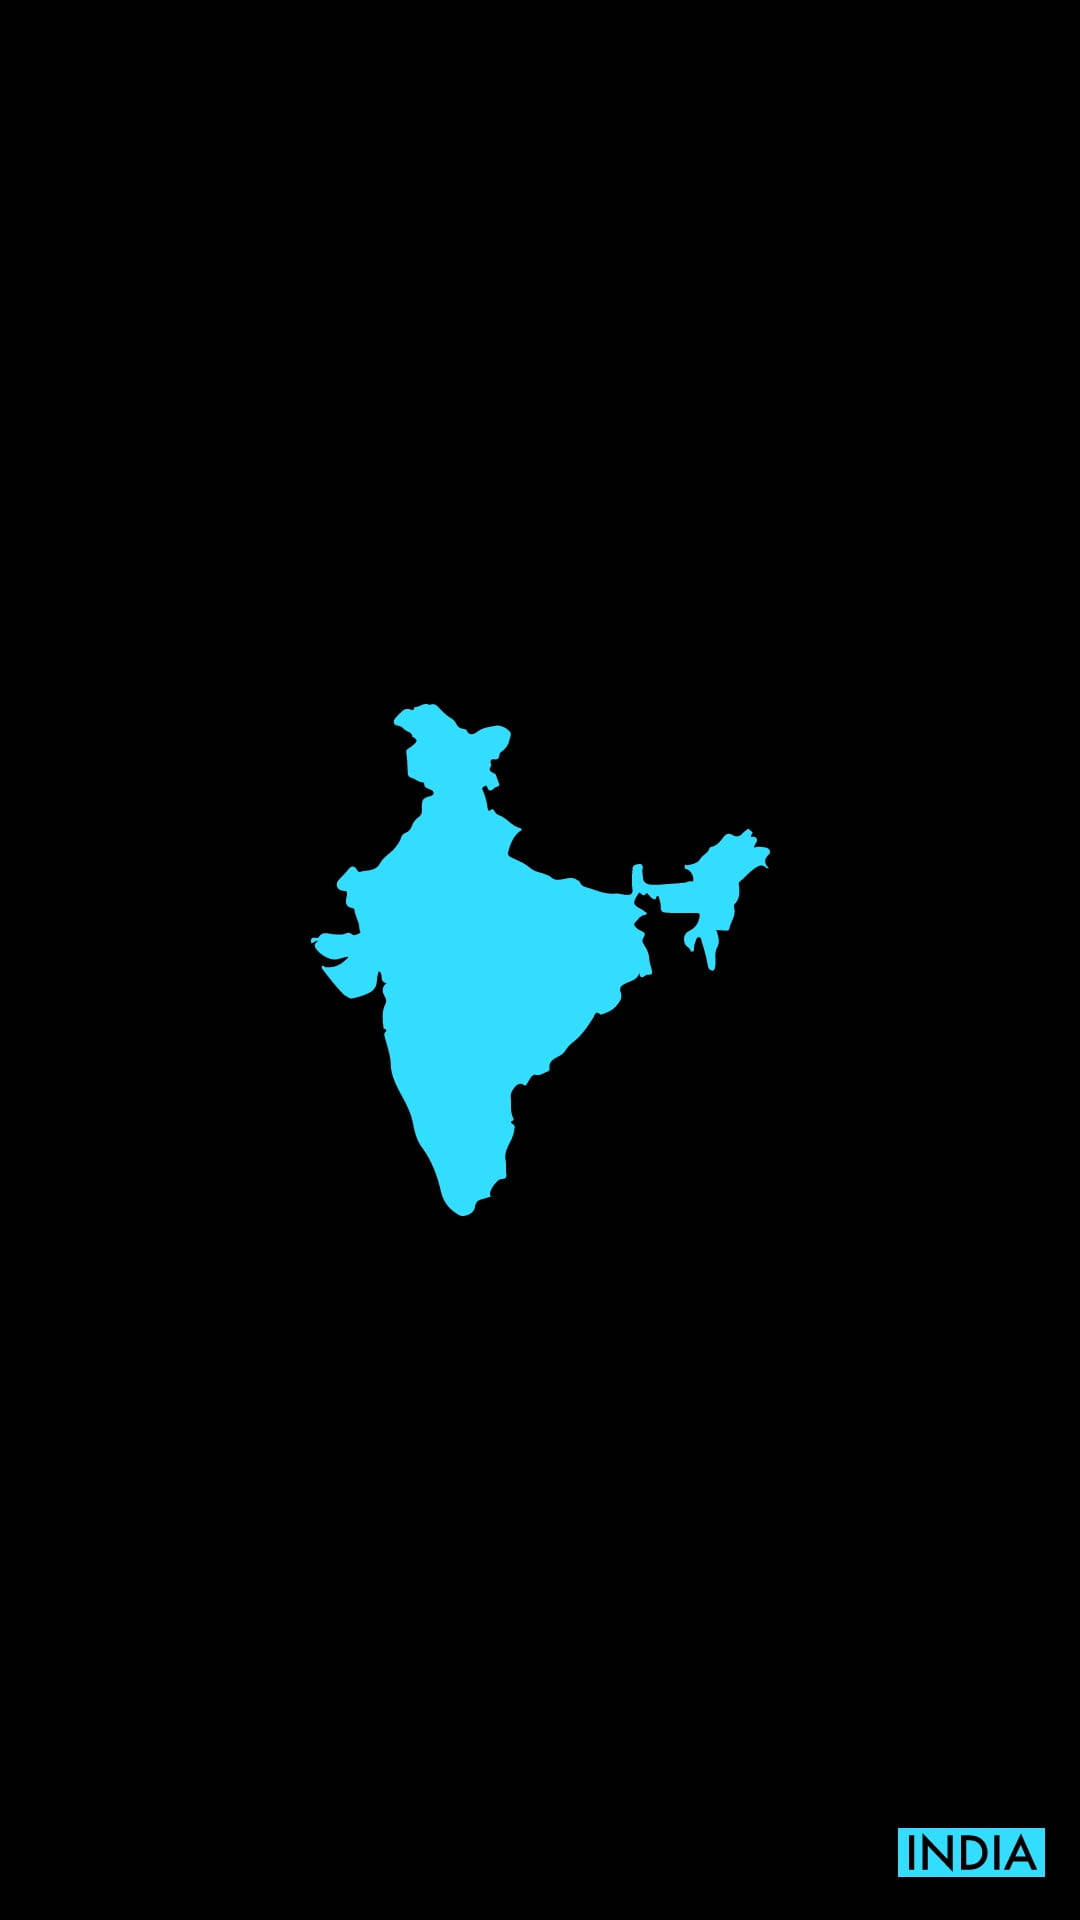 Vibrant Blue India Map Wallpaper